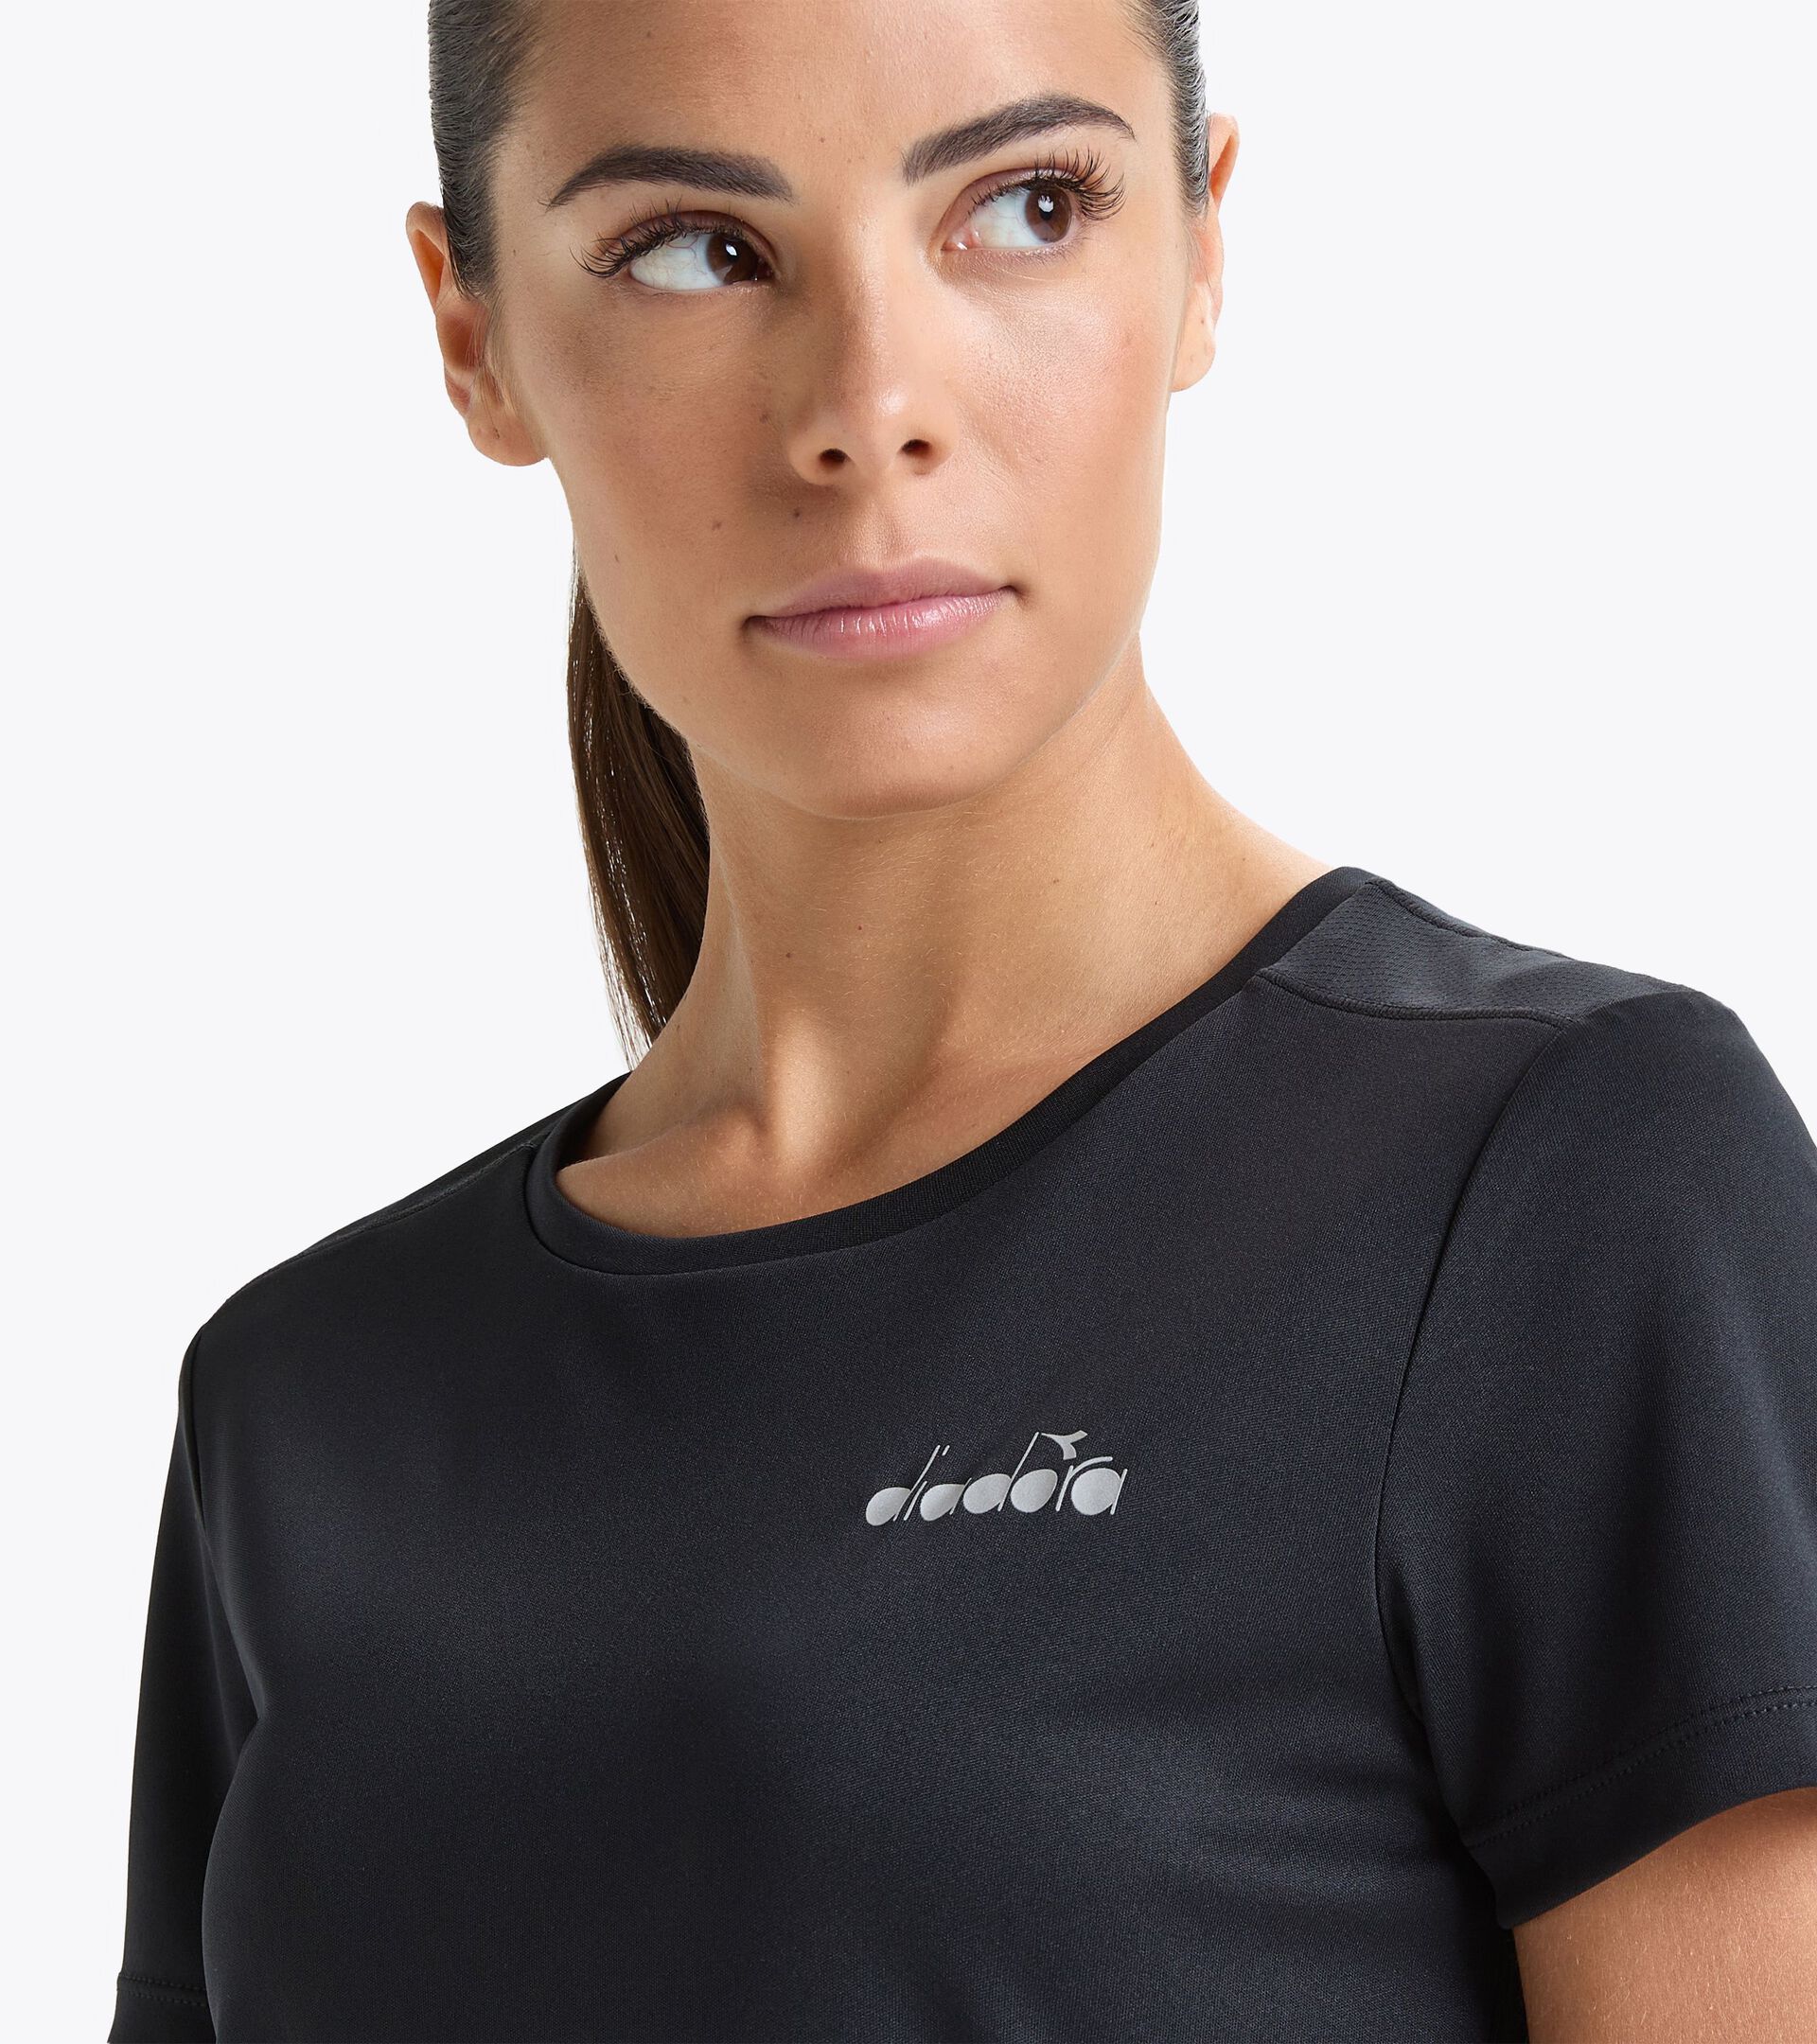 Running t-shirt - Women 
 L. SS T-SHIRT RUN BLACK - Diadora